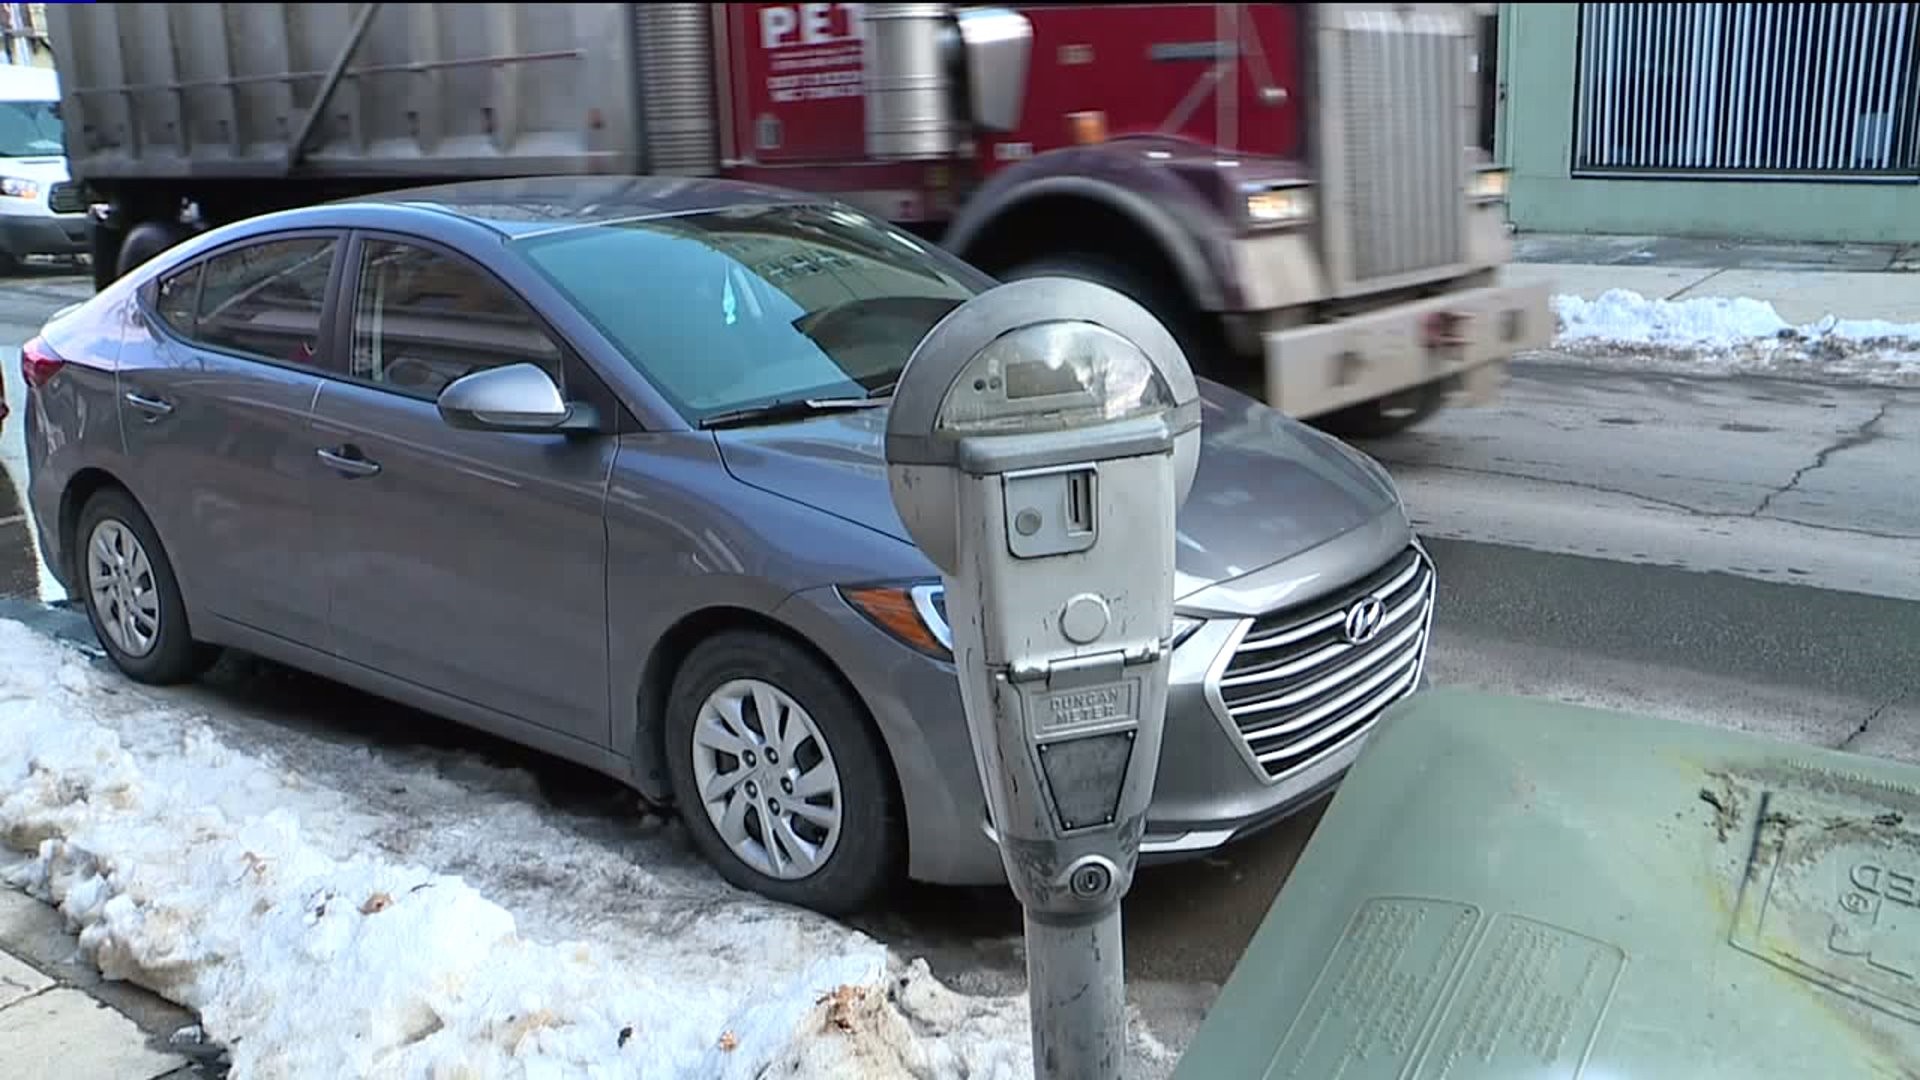 Parking Meter Debate in Lehighton